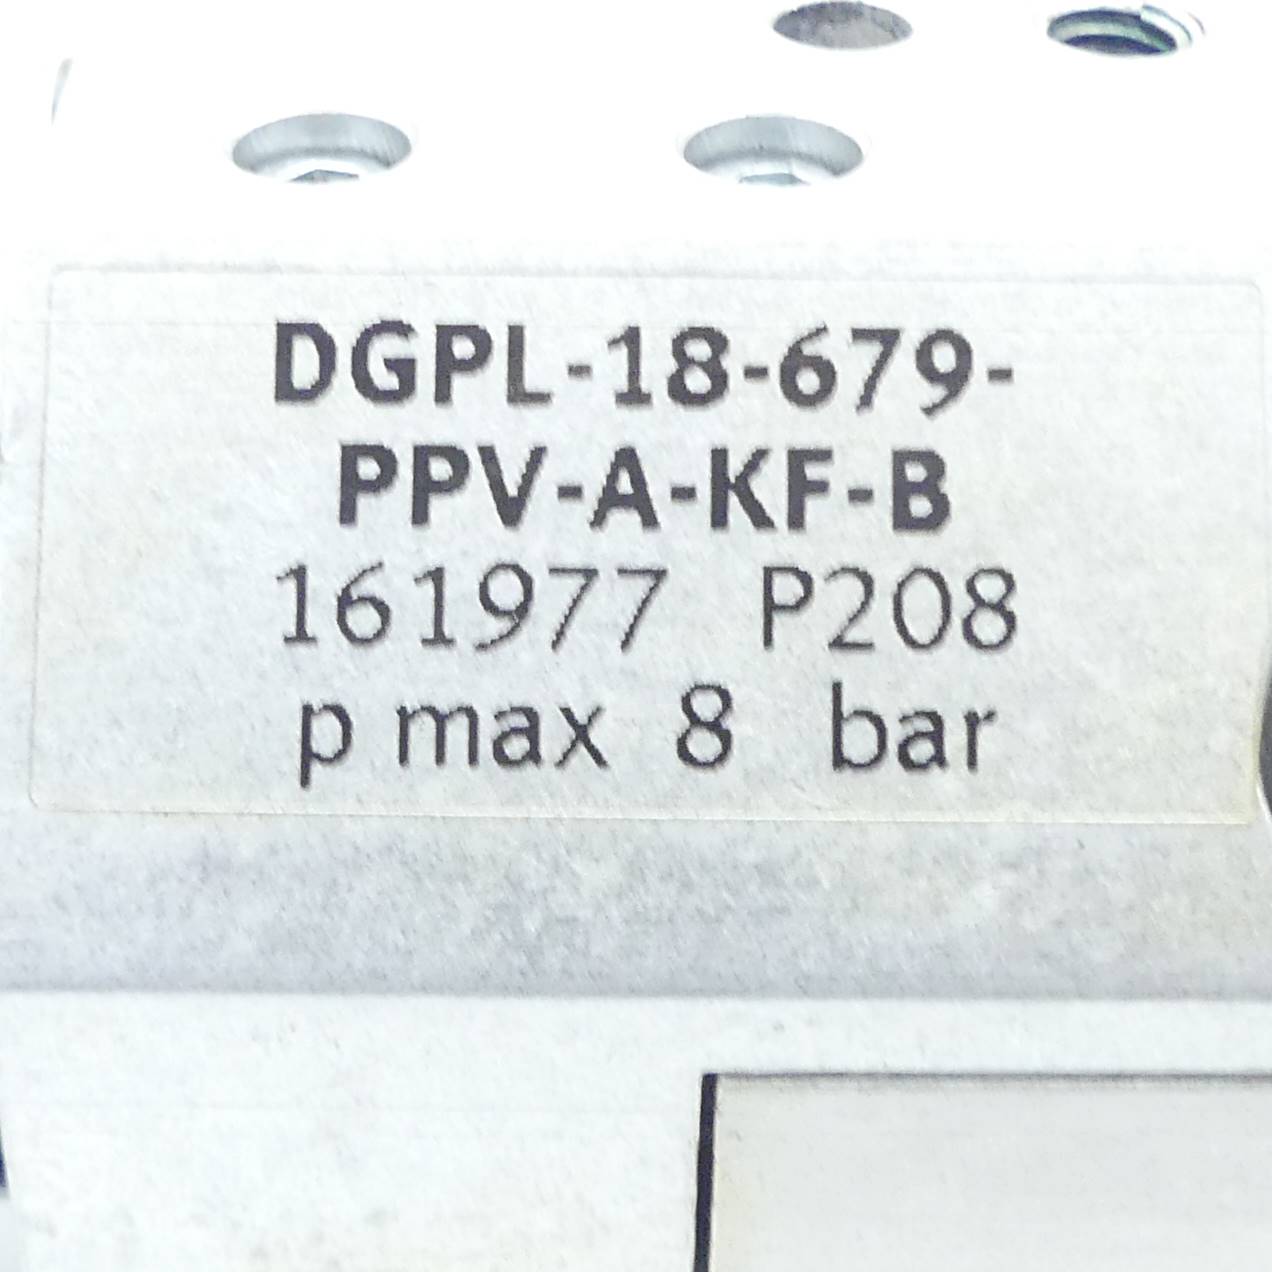 Linearactuator DGPL-18-679-PPV-A-KF-B 